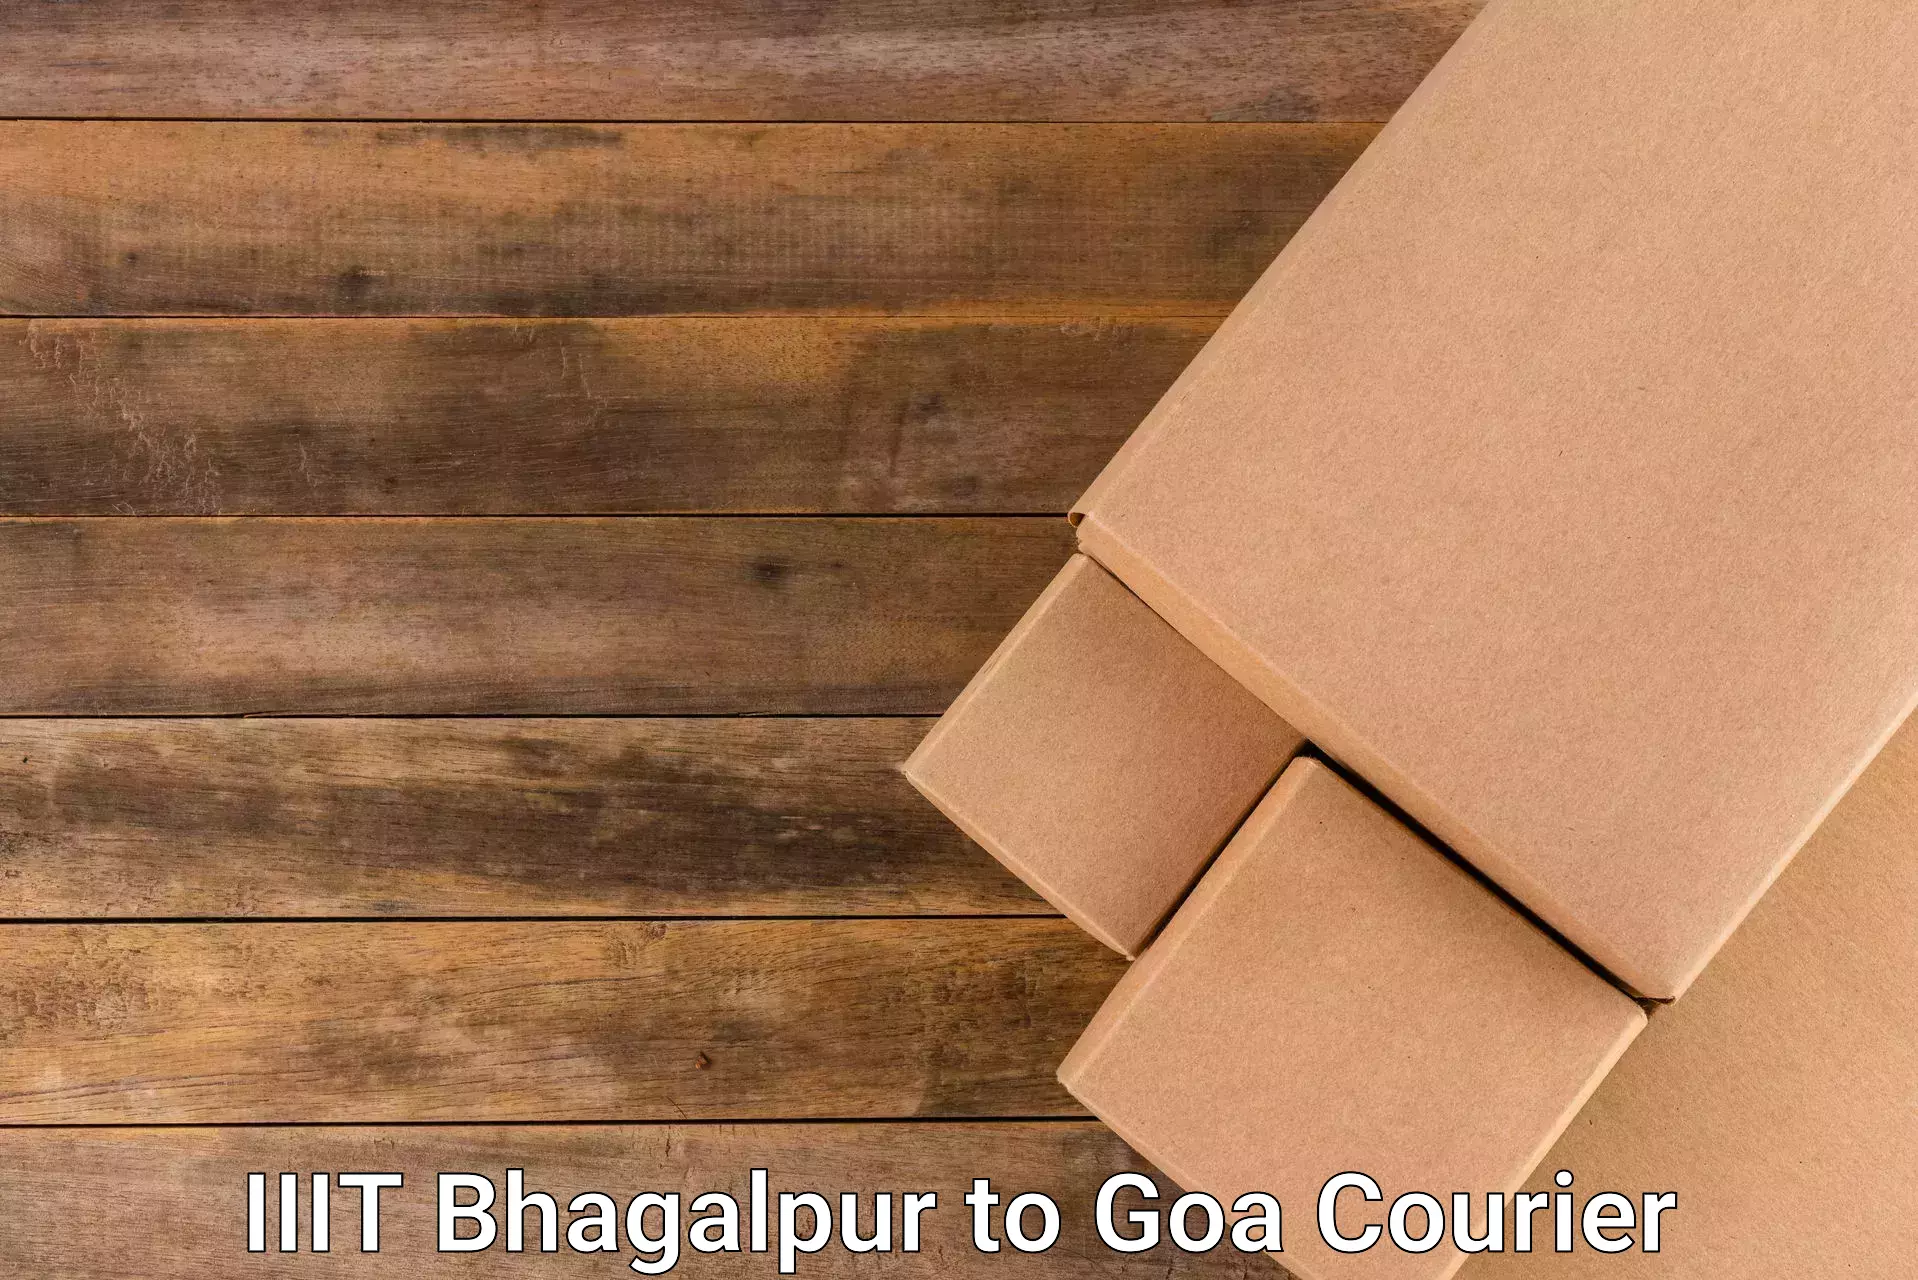 Multi-city courier IIIT Bhagalpur to Goa